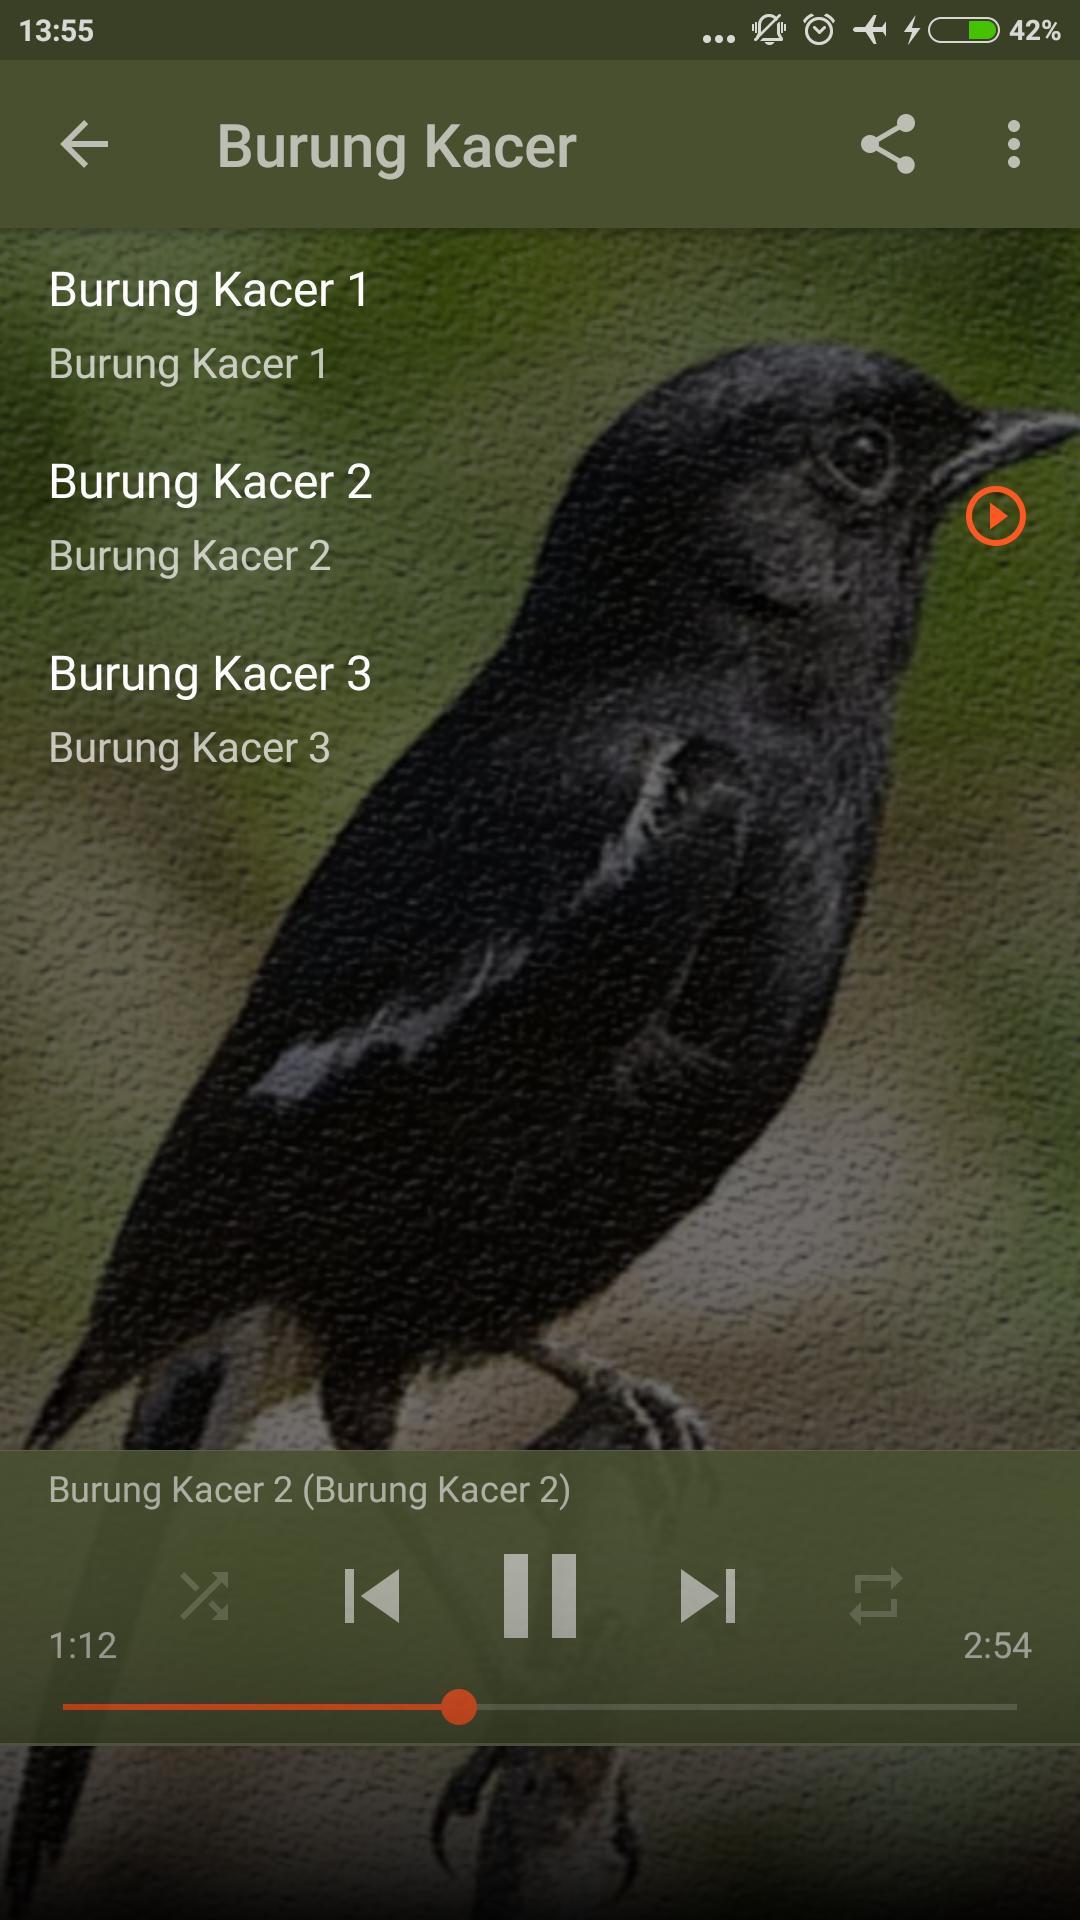 Suara Pikat Segala Jenis Burung for Android - APK Download